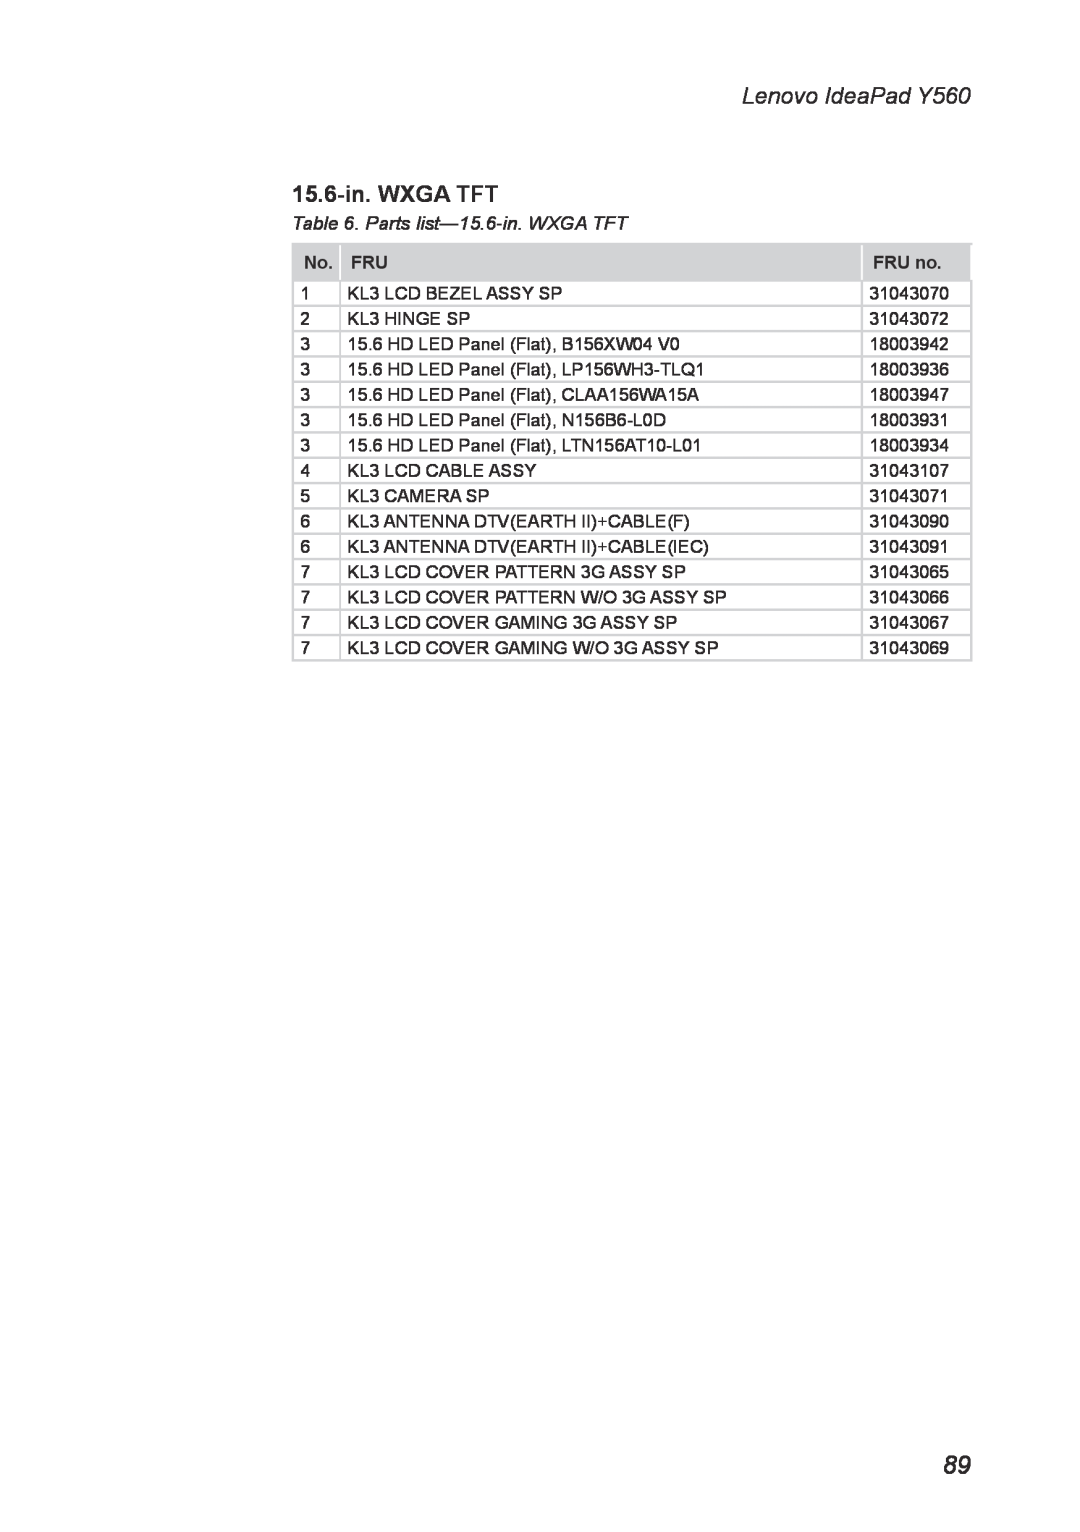 Lenovo manual Parts list-15.6-in. WXGA TFT, Lenovo IdeaPad Y560, No. FRU, FRU no 